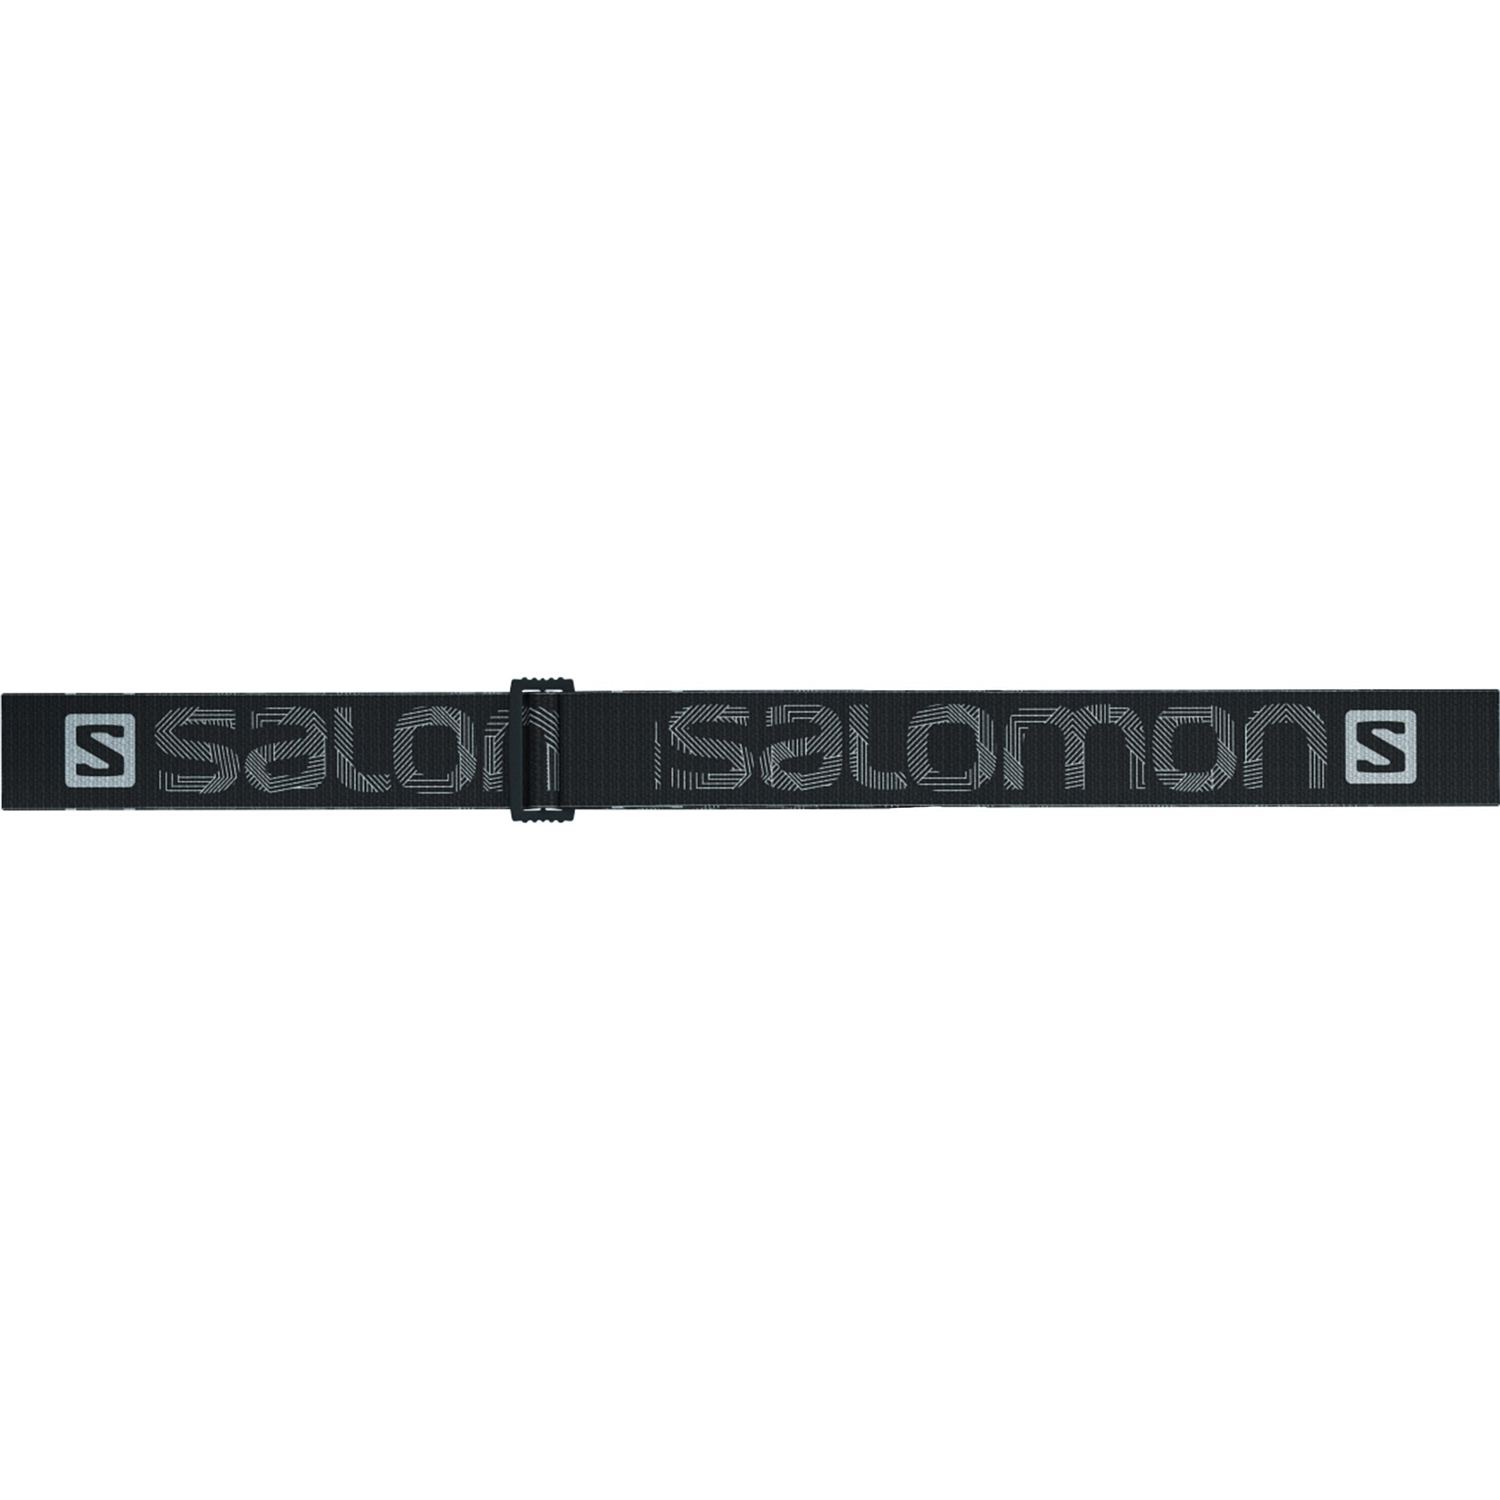 Очки горнолыжные SALOMON 2018-19 AKSIUM ACCESS Bk/Univ.T.Orange